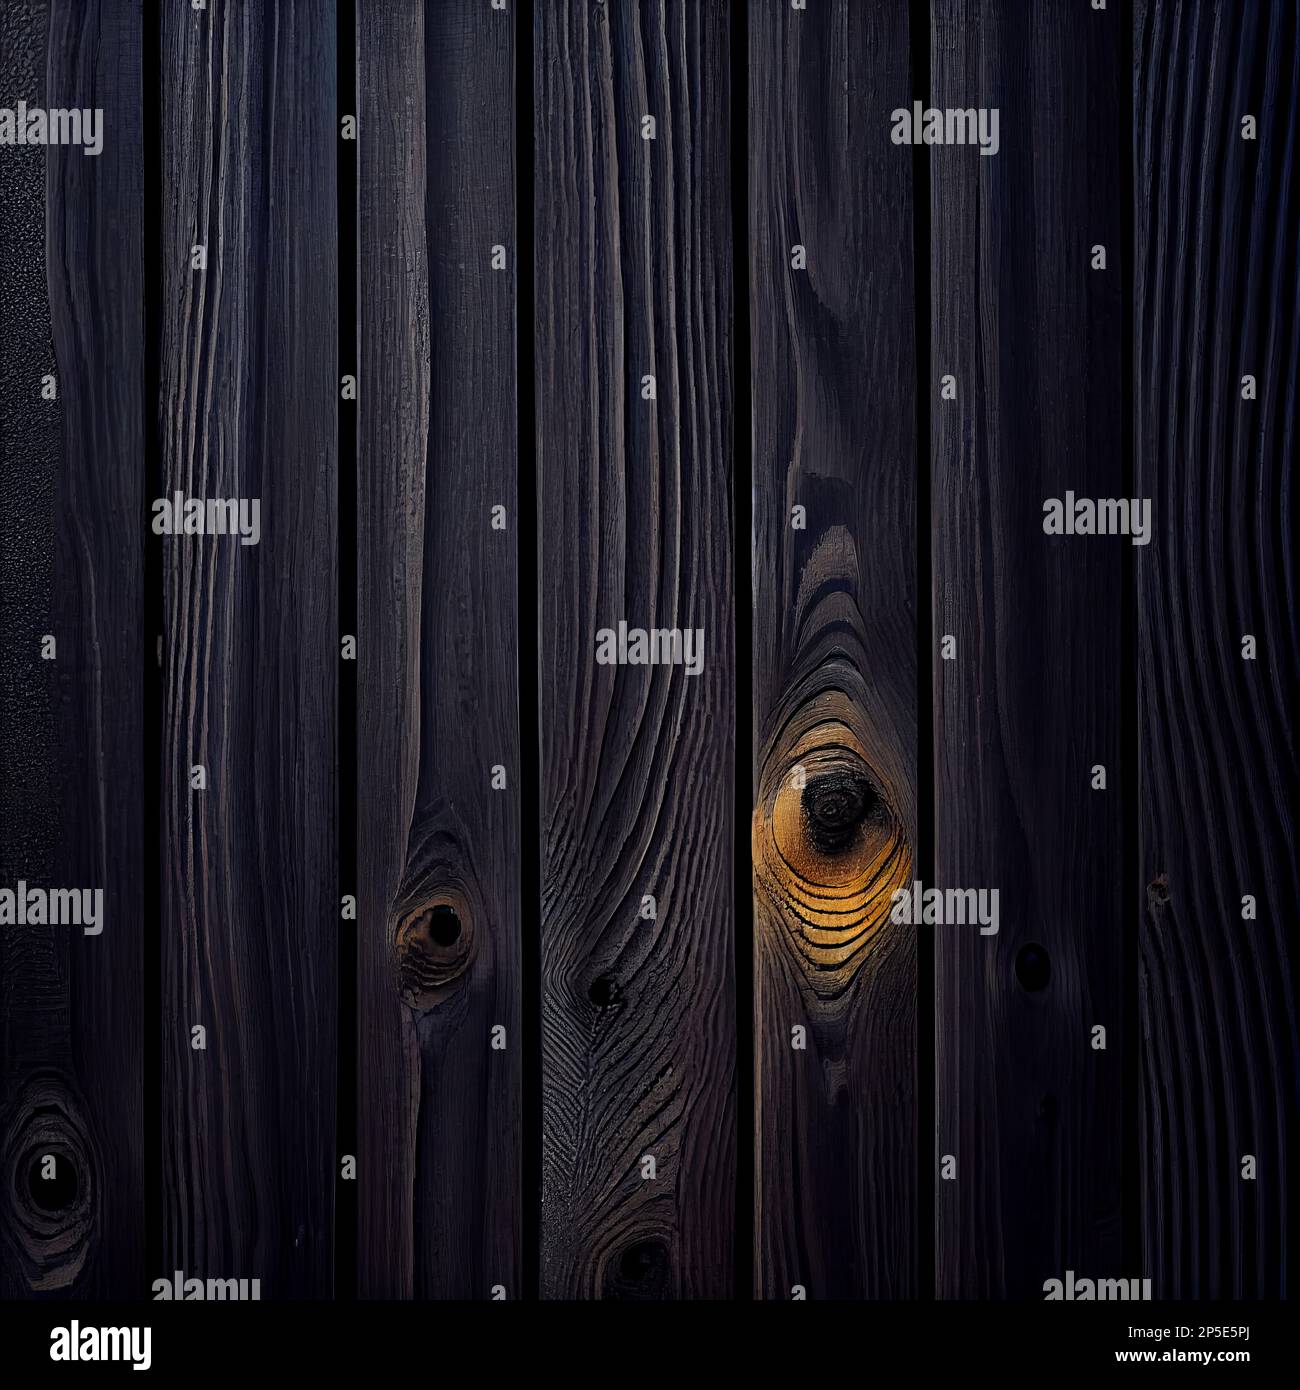 Abstrakter Hintergrund der Holzoberfläche Shou Sugi Ban. Dekorative Holzpaneele Nahaufnahme, detaillierte Holzstruktur. Natürliches, altmodisches Holzmaterial abstraktes Muster. Stockfoto